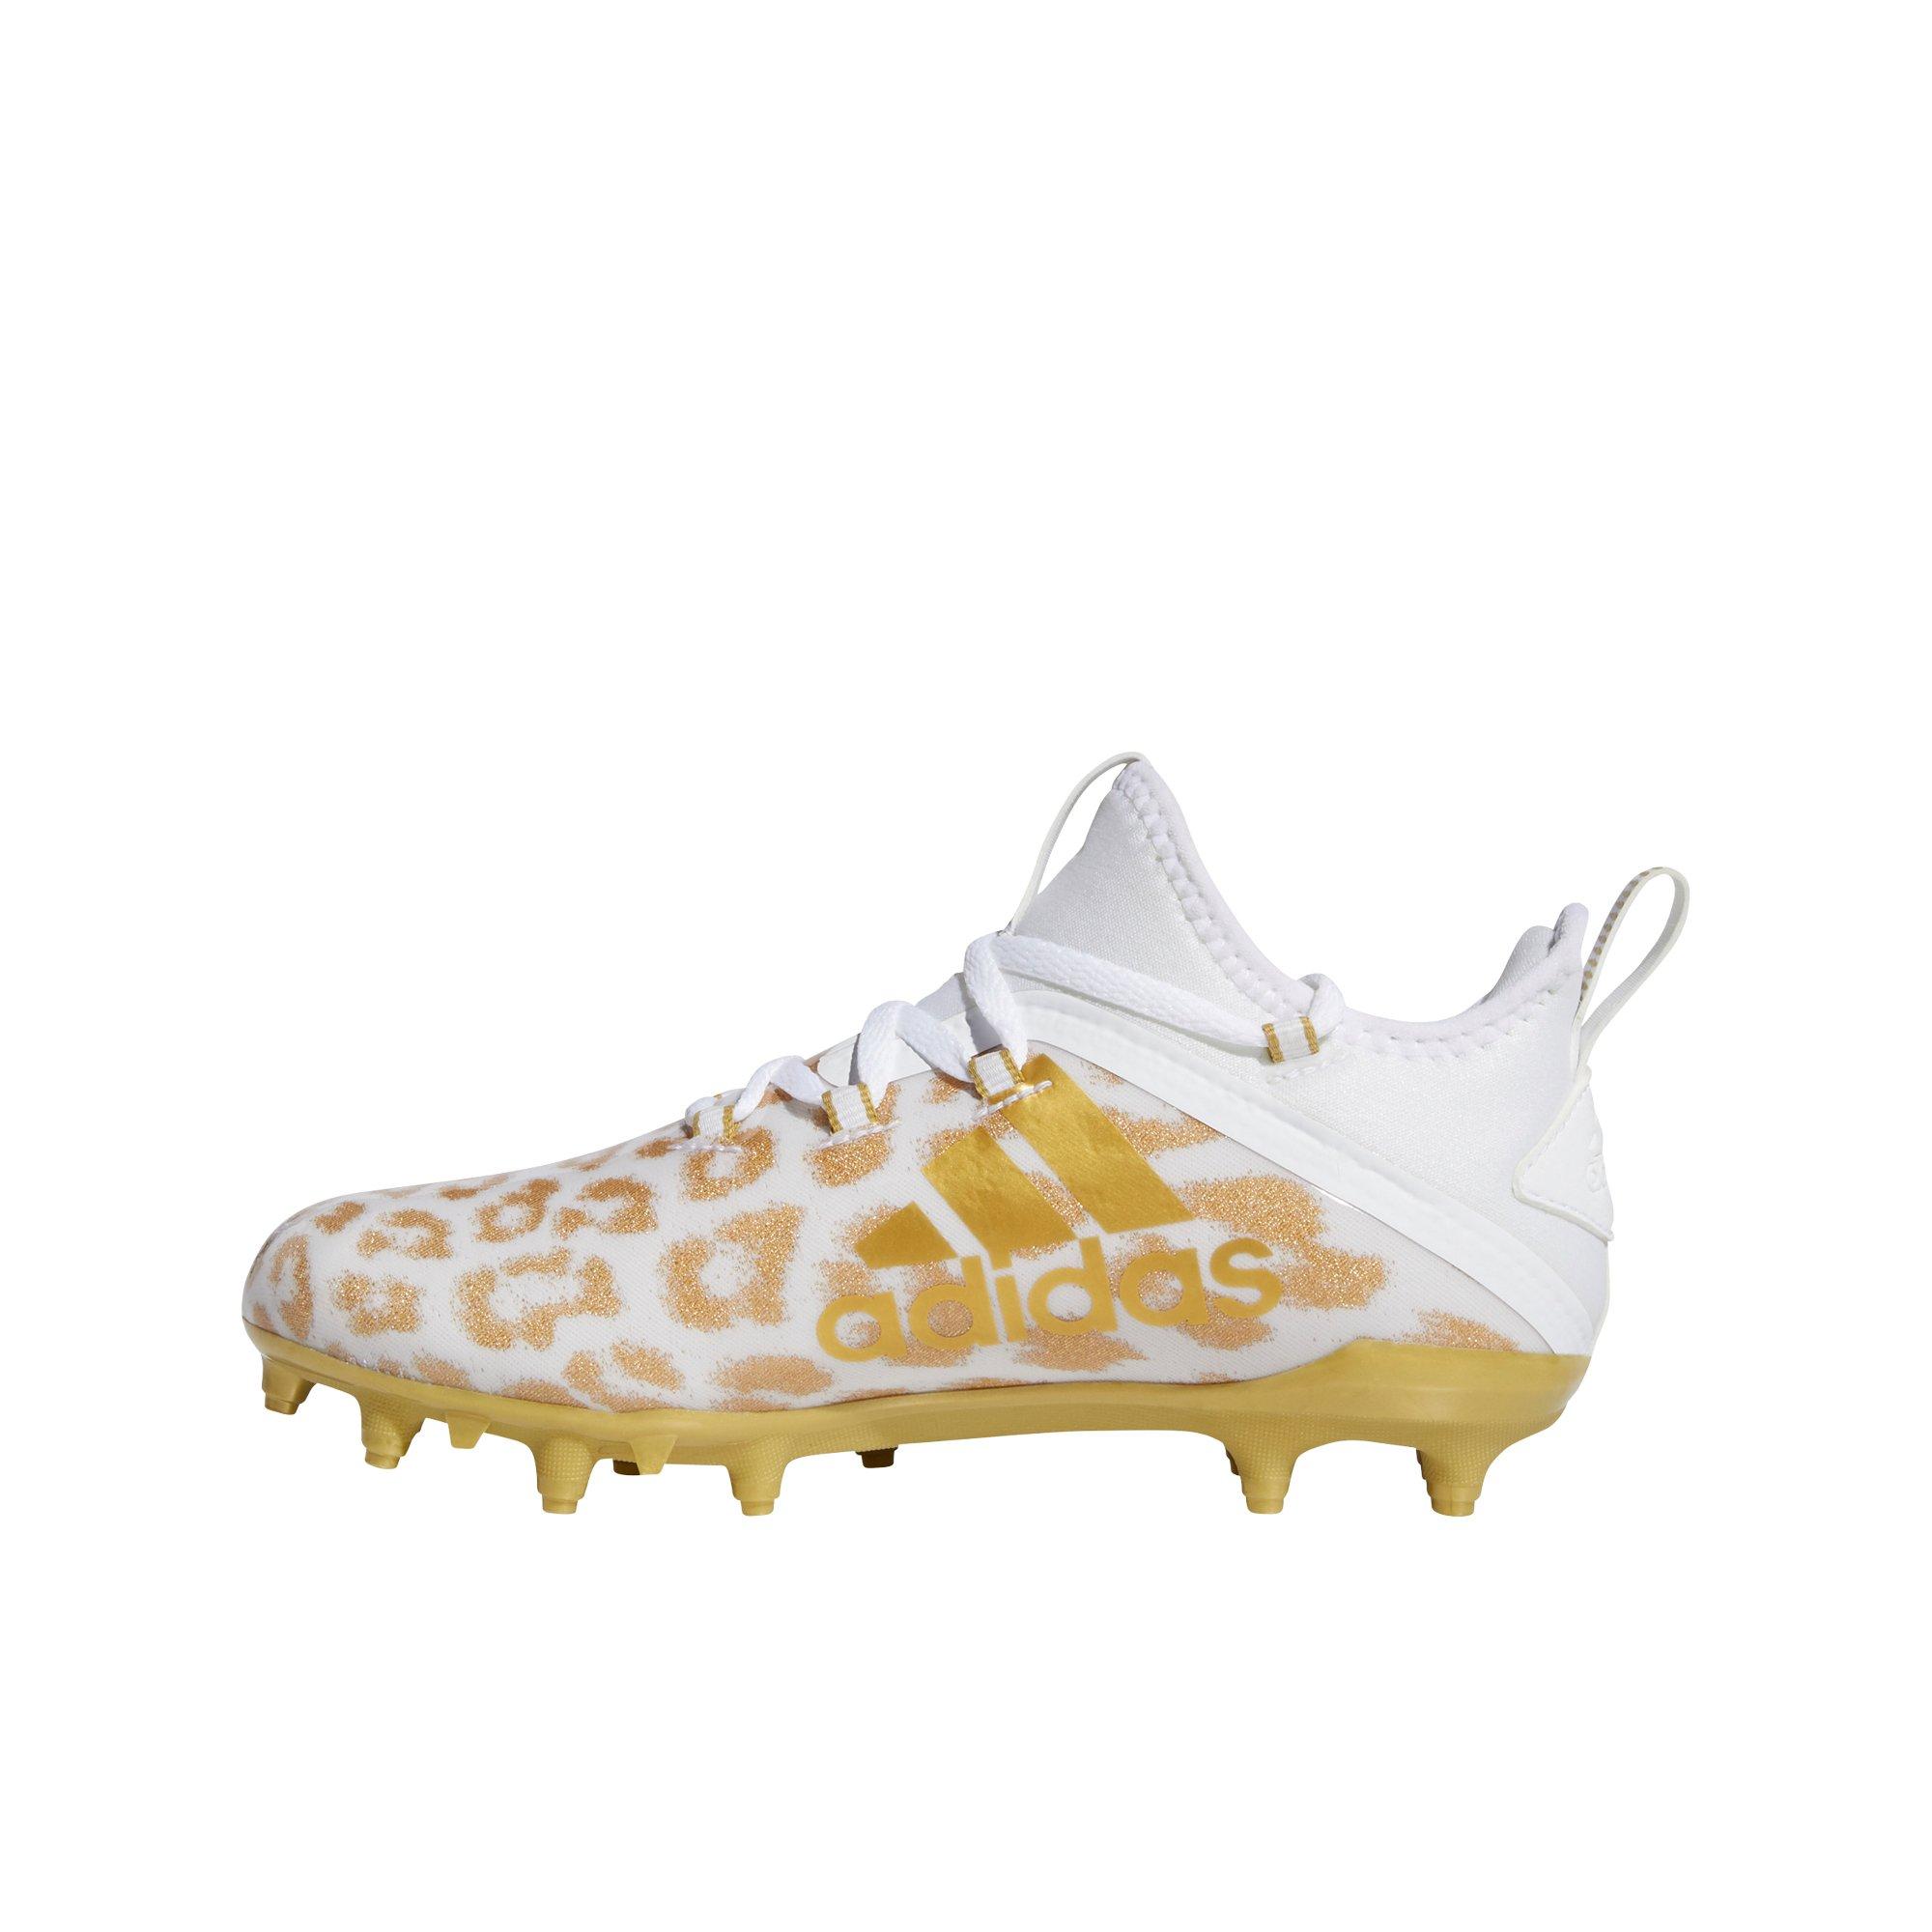 adidas cheetah cleats